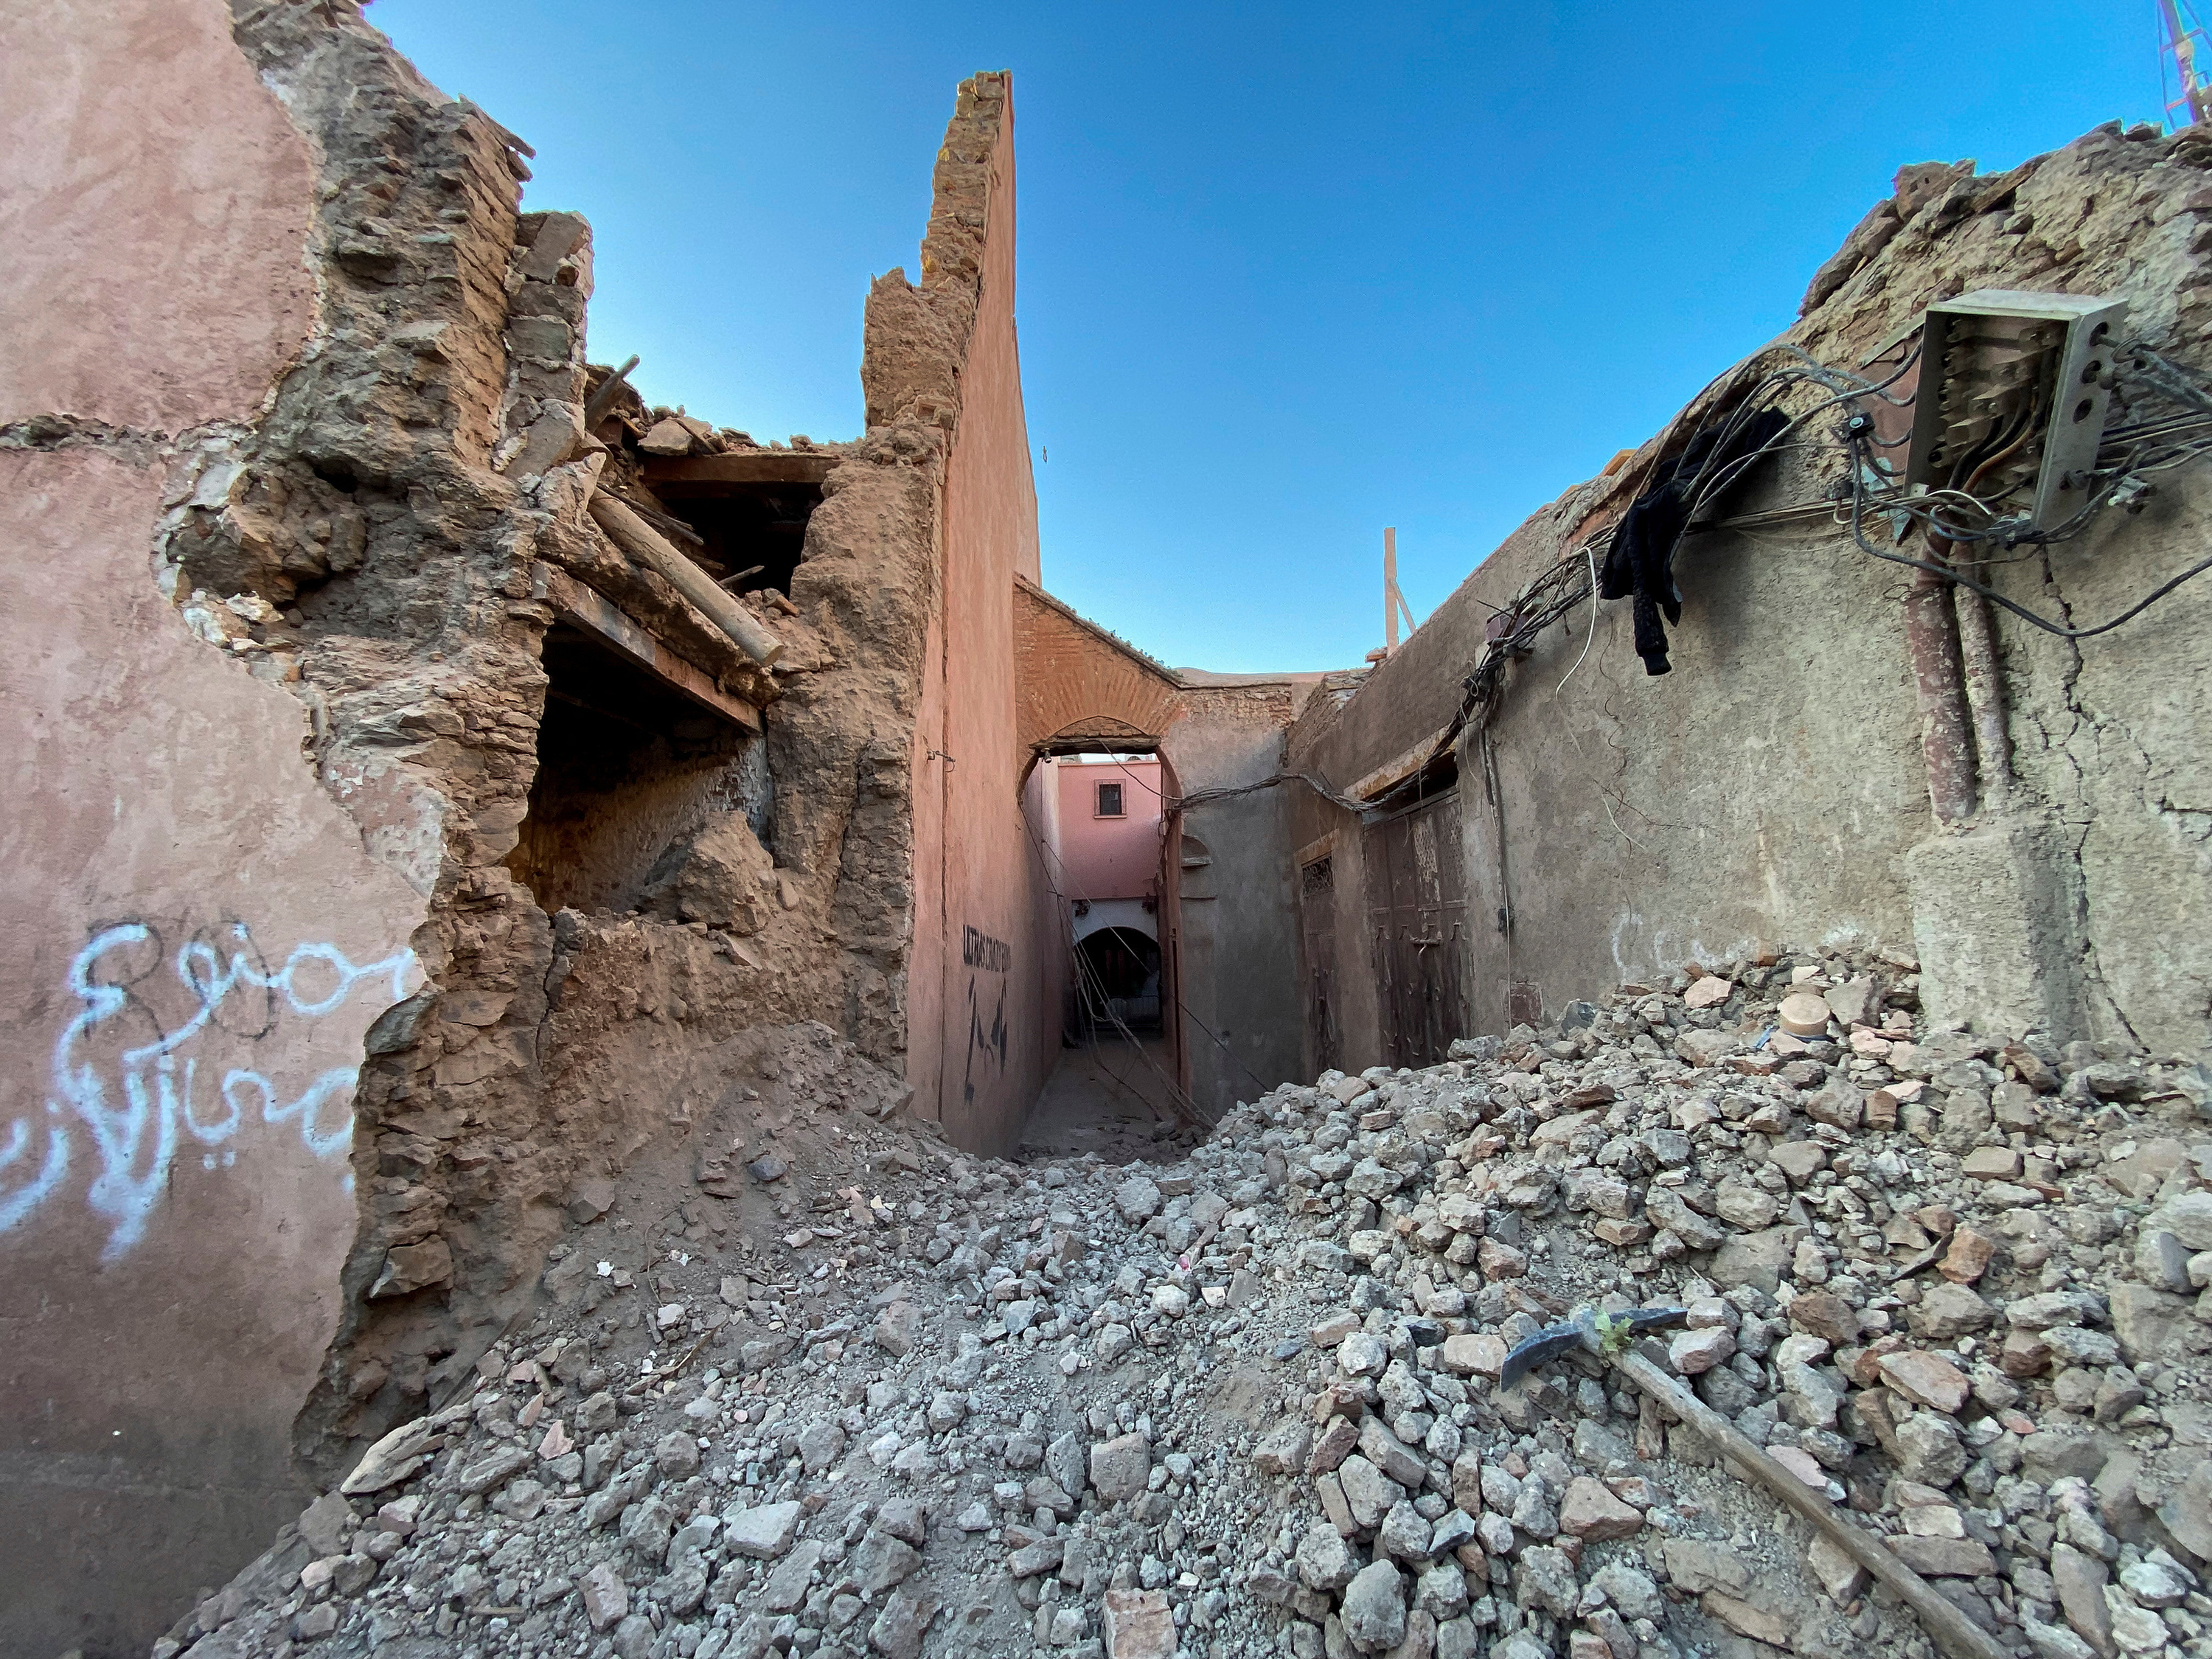 Një pamje e përgjithshme e dëmtimit në qytetin historik të Marrakech, Marok.